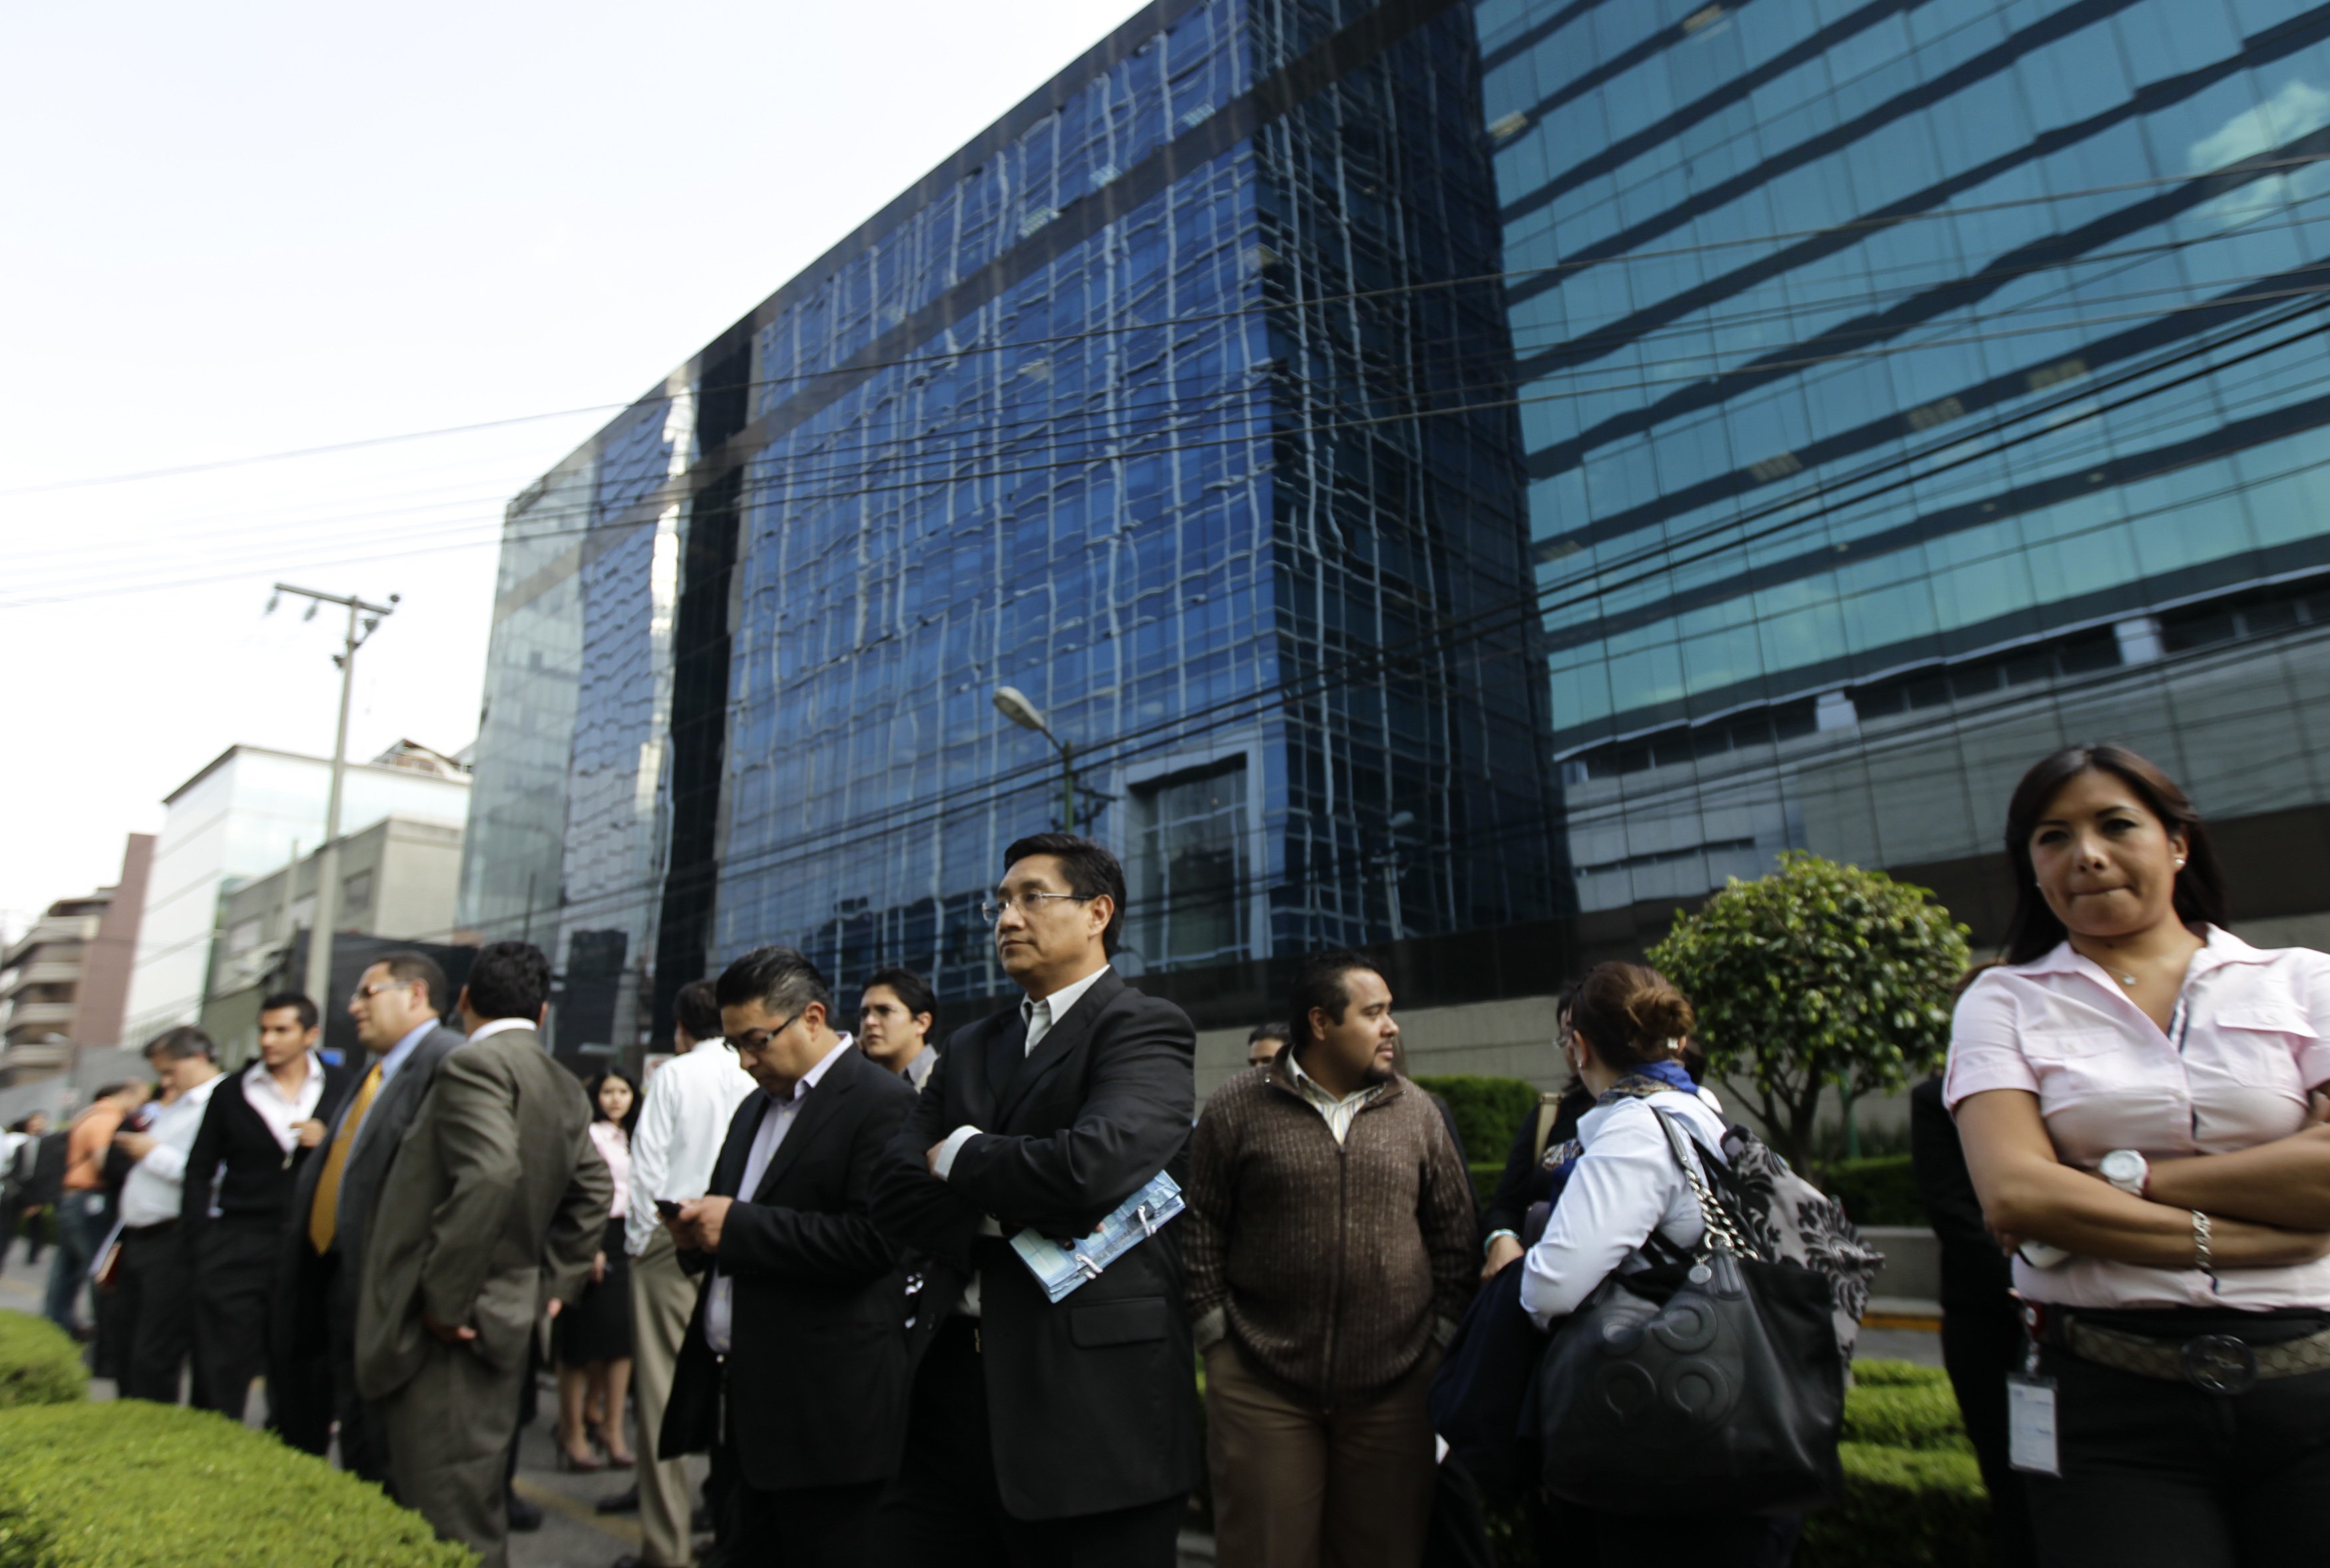 Πανικόβλητοι βγήκαν εκατοντάδες εργαζόμενοι από τα γραφεία τους - ΦΩΤΟ REUTERS